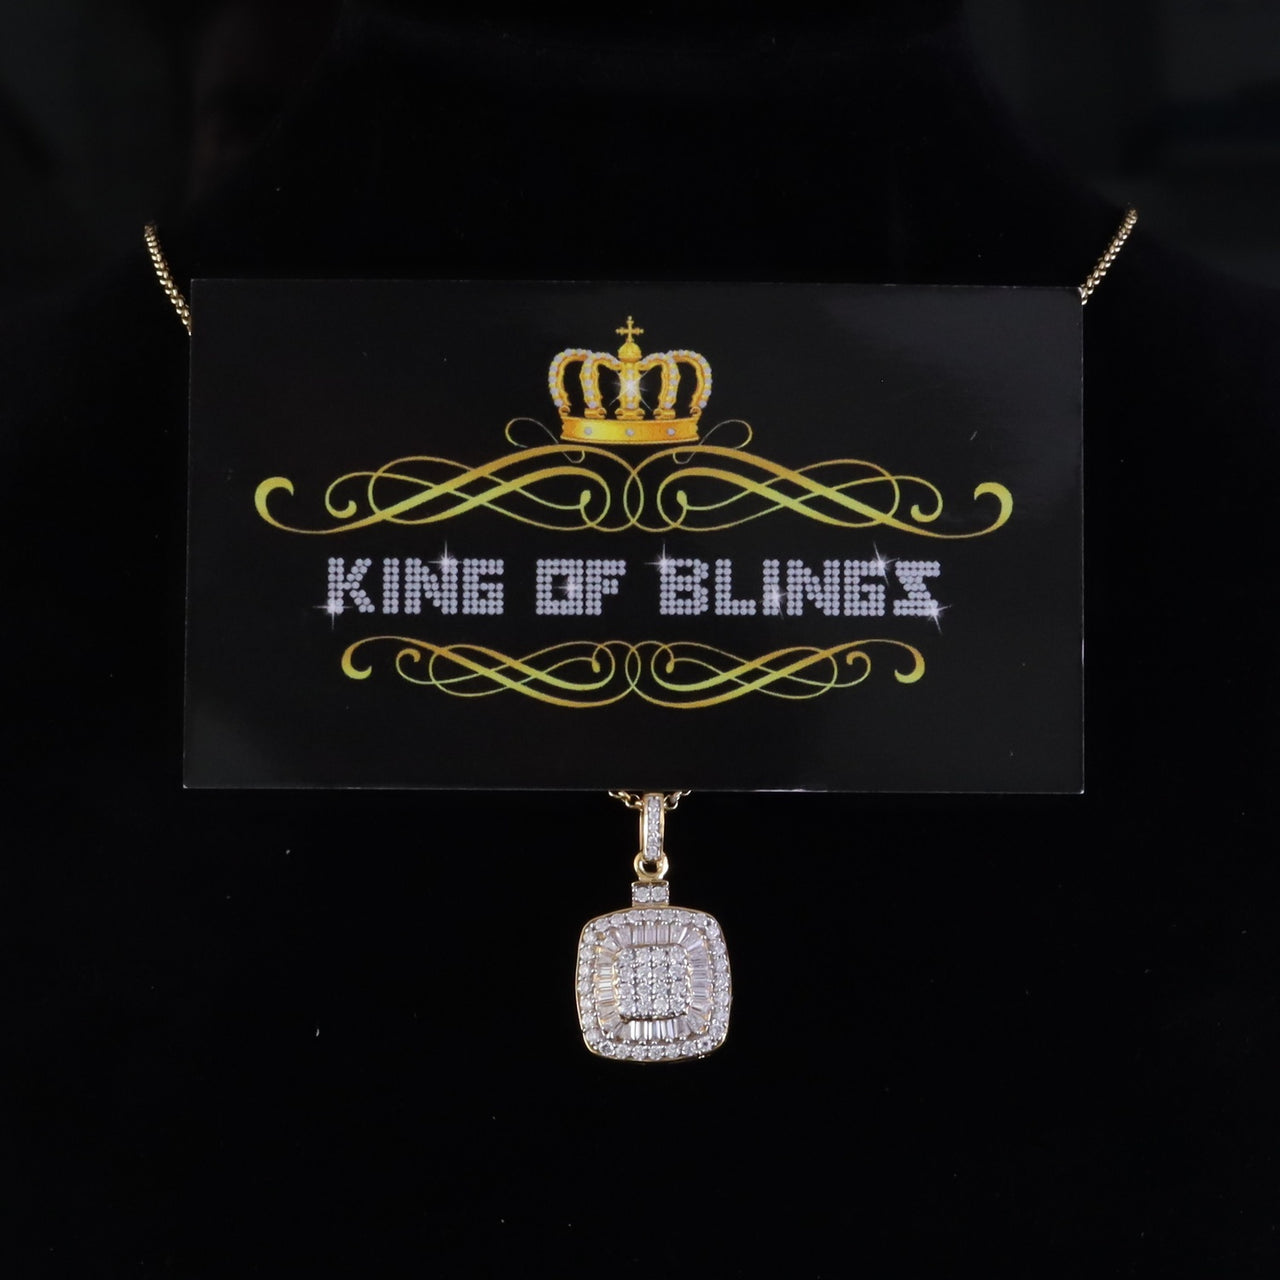 King Of Bling's 925 Yellow Silver 1.50ct VVS D Clr Moissanite Baguette & Round Pendant for Women KING OF BLINGS